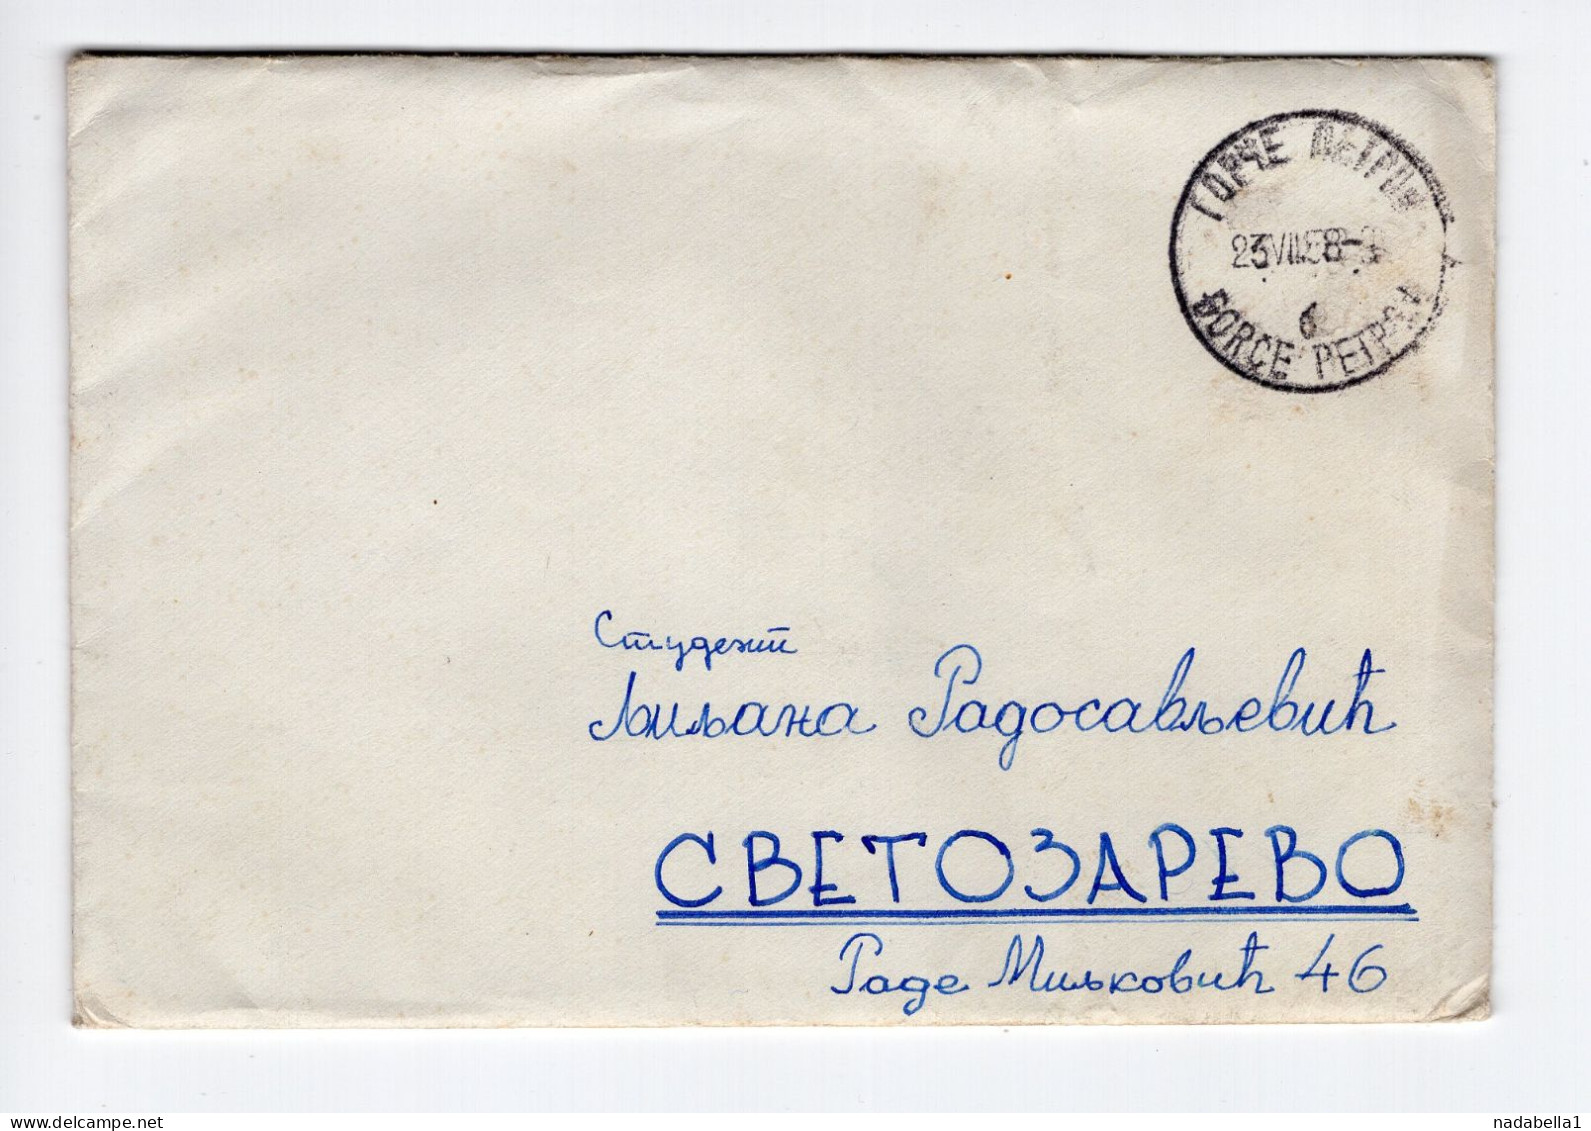 1958. YUGOSLAVIA,MACEDONIA,GORČE PETROV COVER TO SVETOZAREVO,NO STAMP,30 POSTAGE DUE APPLIED - Postage Due